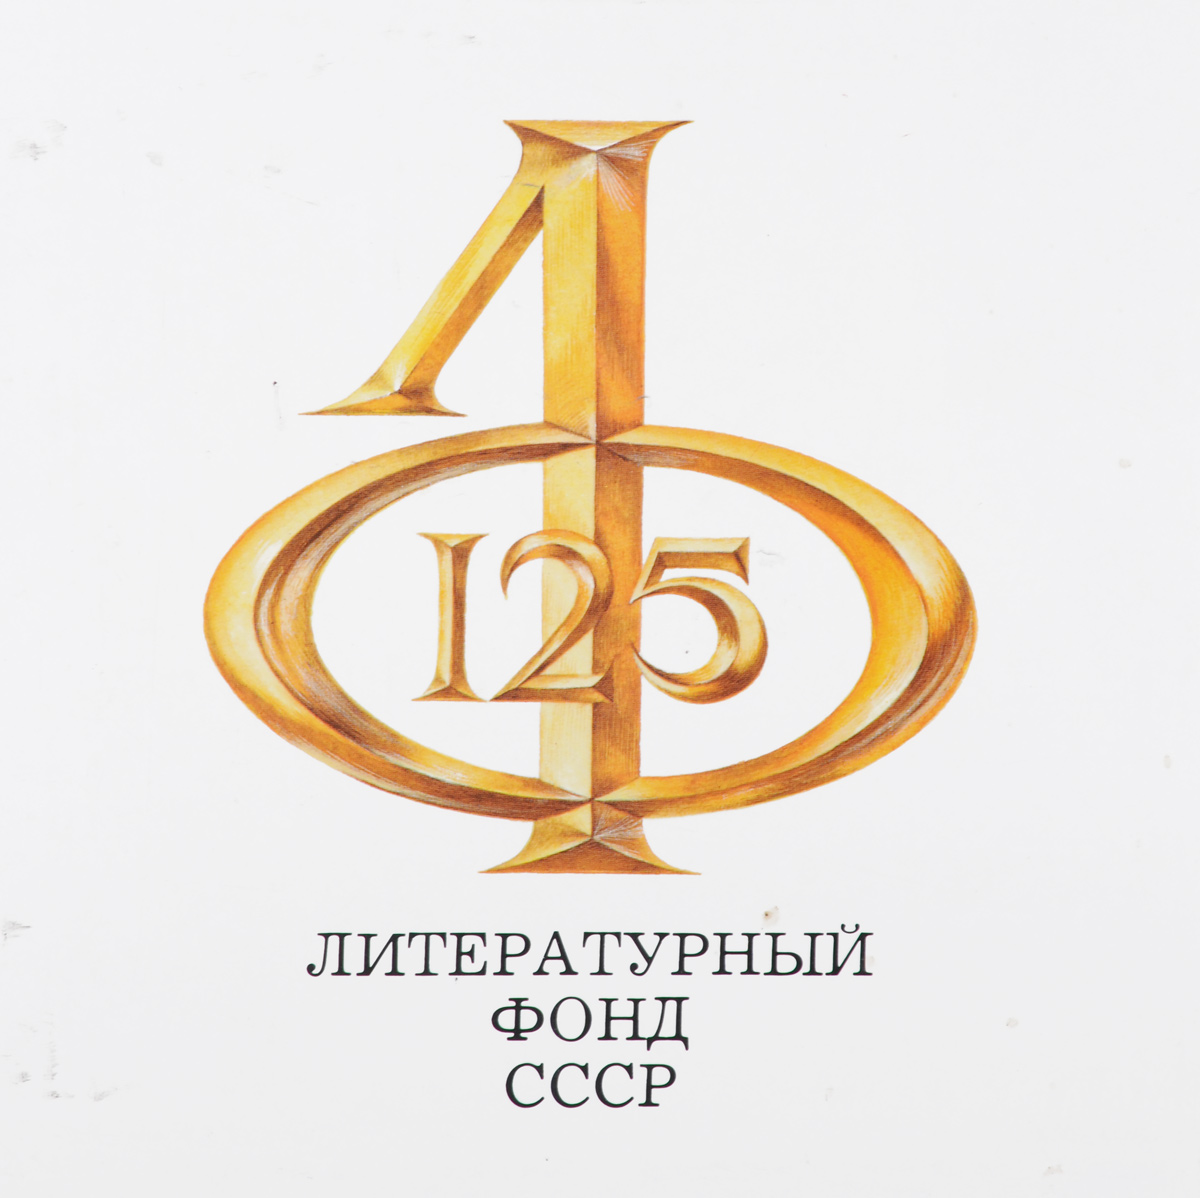 Литературному фонду СССР - 125 лет